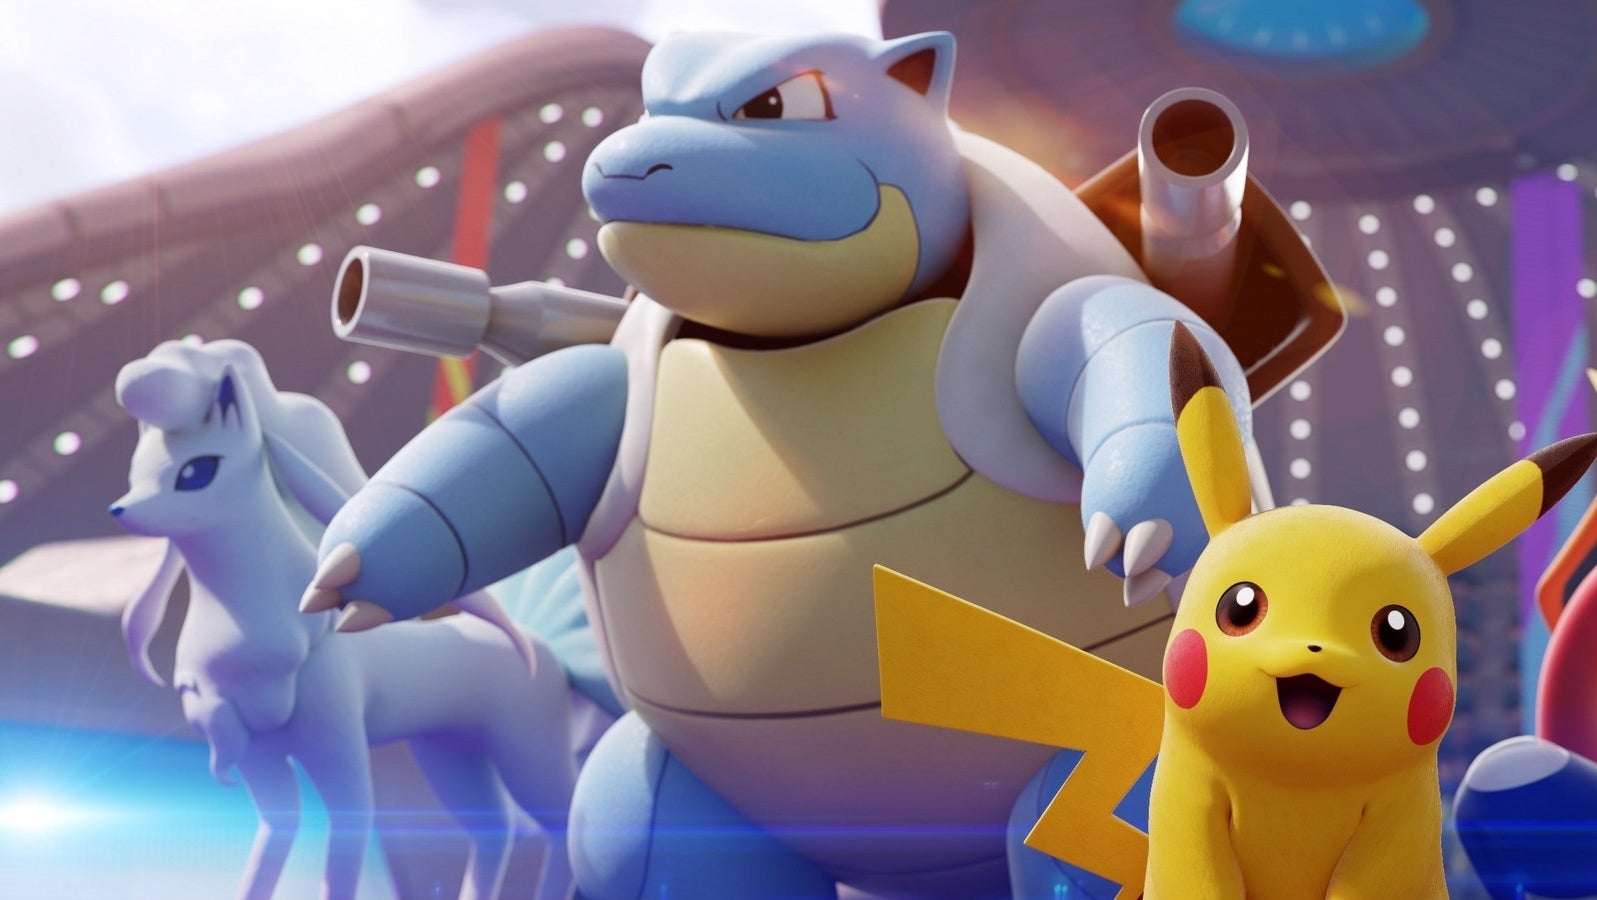 Imagen para Pokémon Unite recibe el premio a Mejor Juego de Google Play en 2021